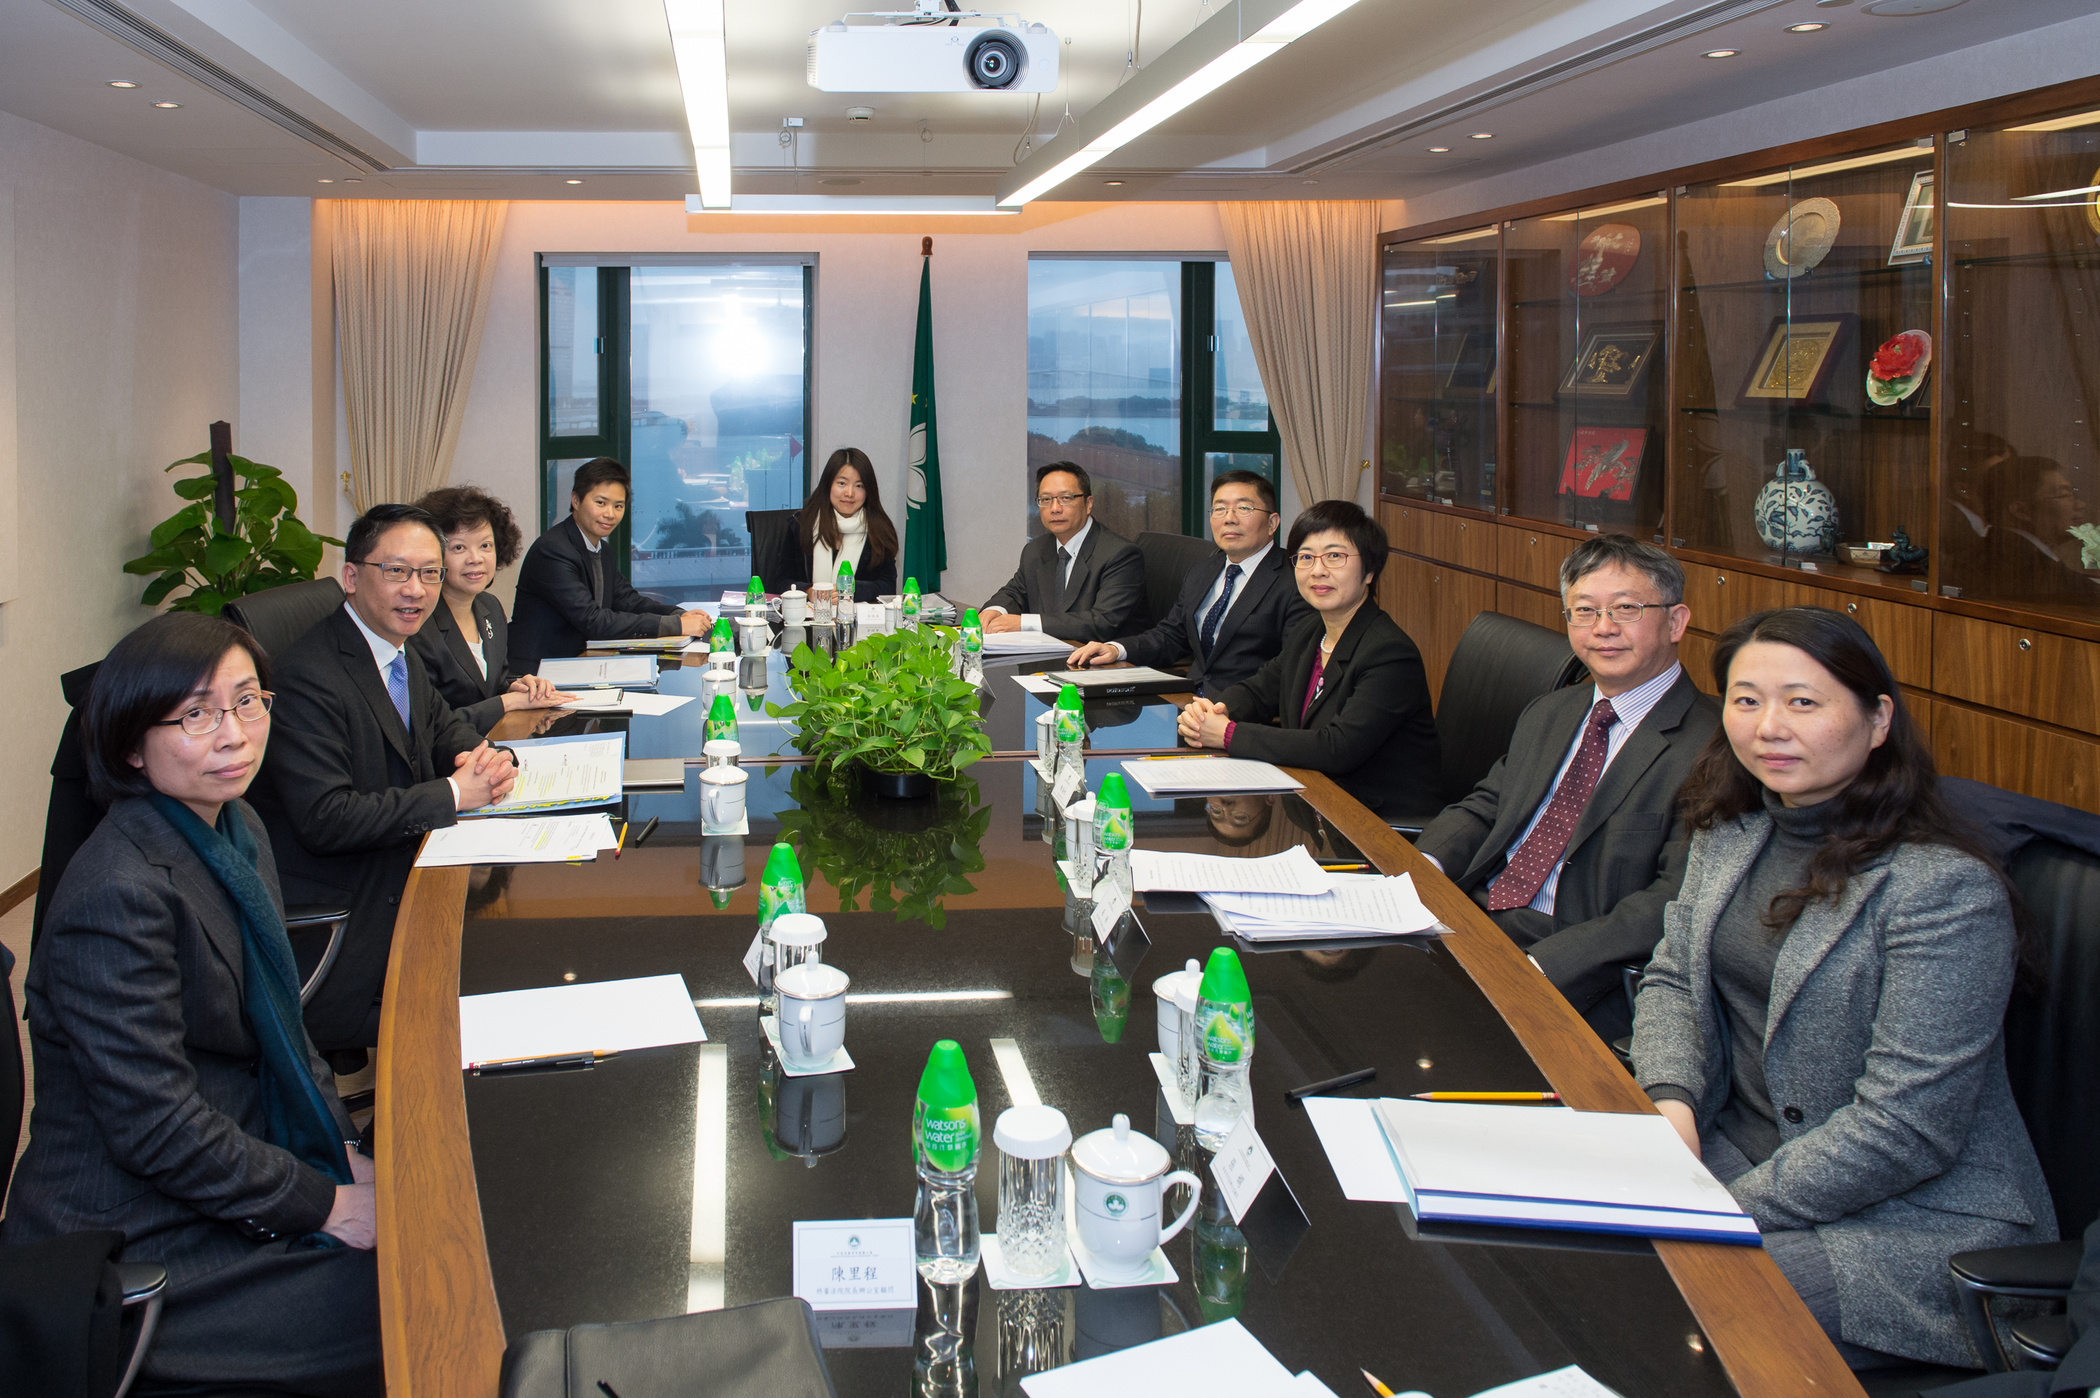 行政法务司司长陈海帆与香港律政司司长袁国强会面，她表示与香港磋商两地刑事司法互助协议进展顺利。